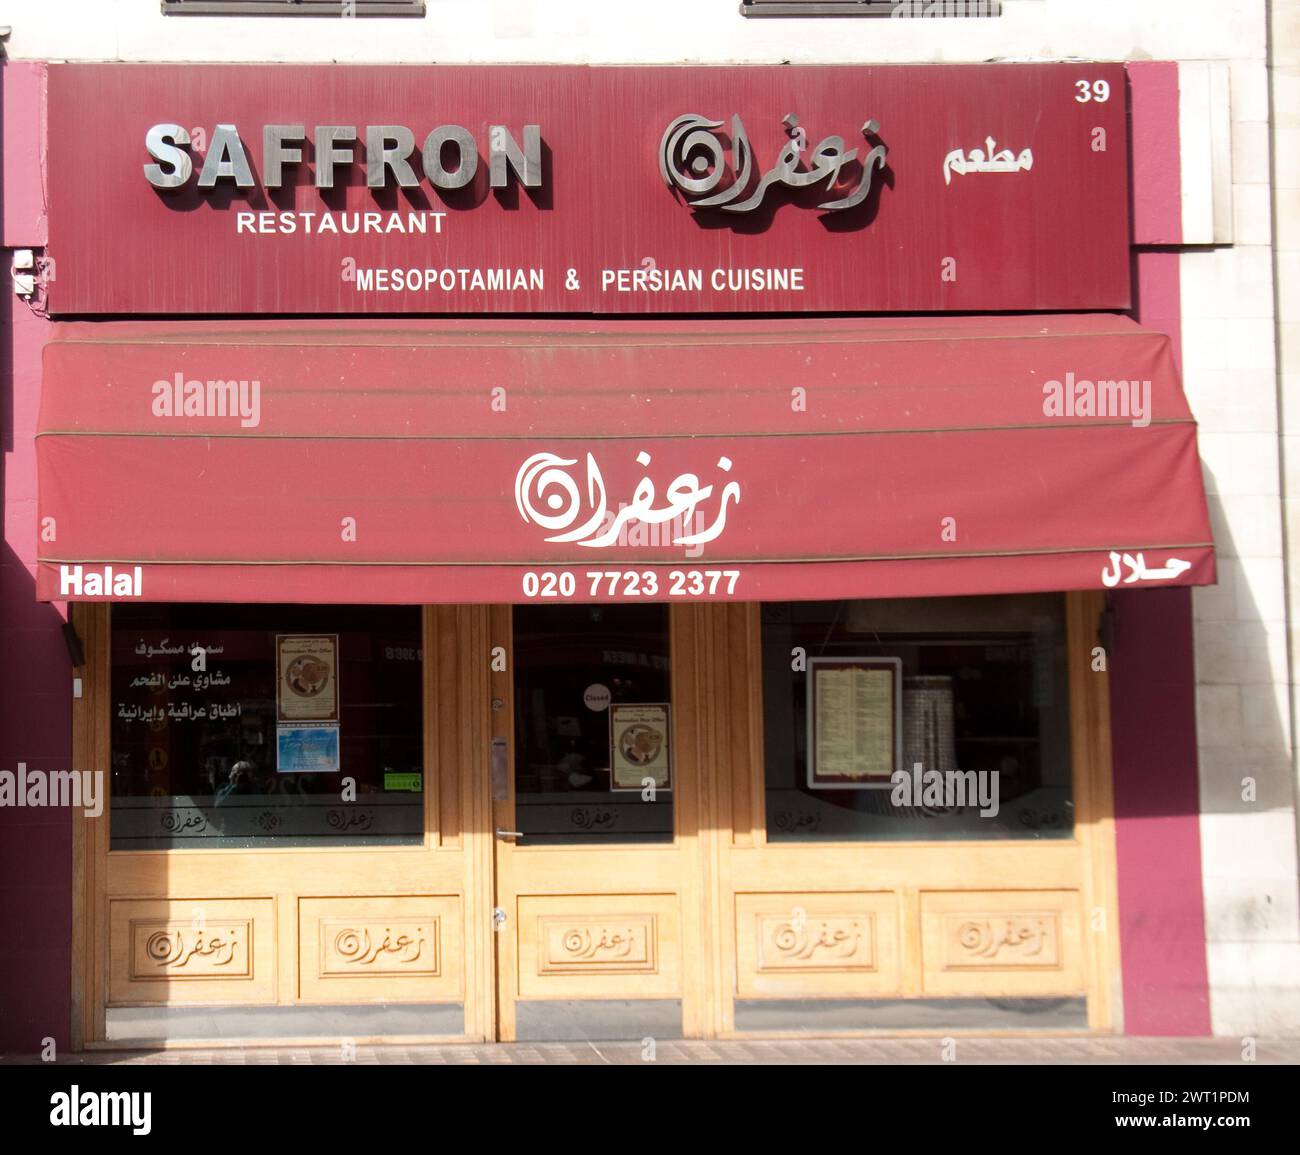 Saffron Restaurant - cuisine mésopotamienne et persane, Bayswater, Londres, Royaume-Uni Banque D'Images